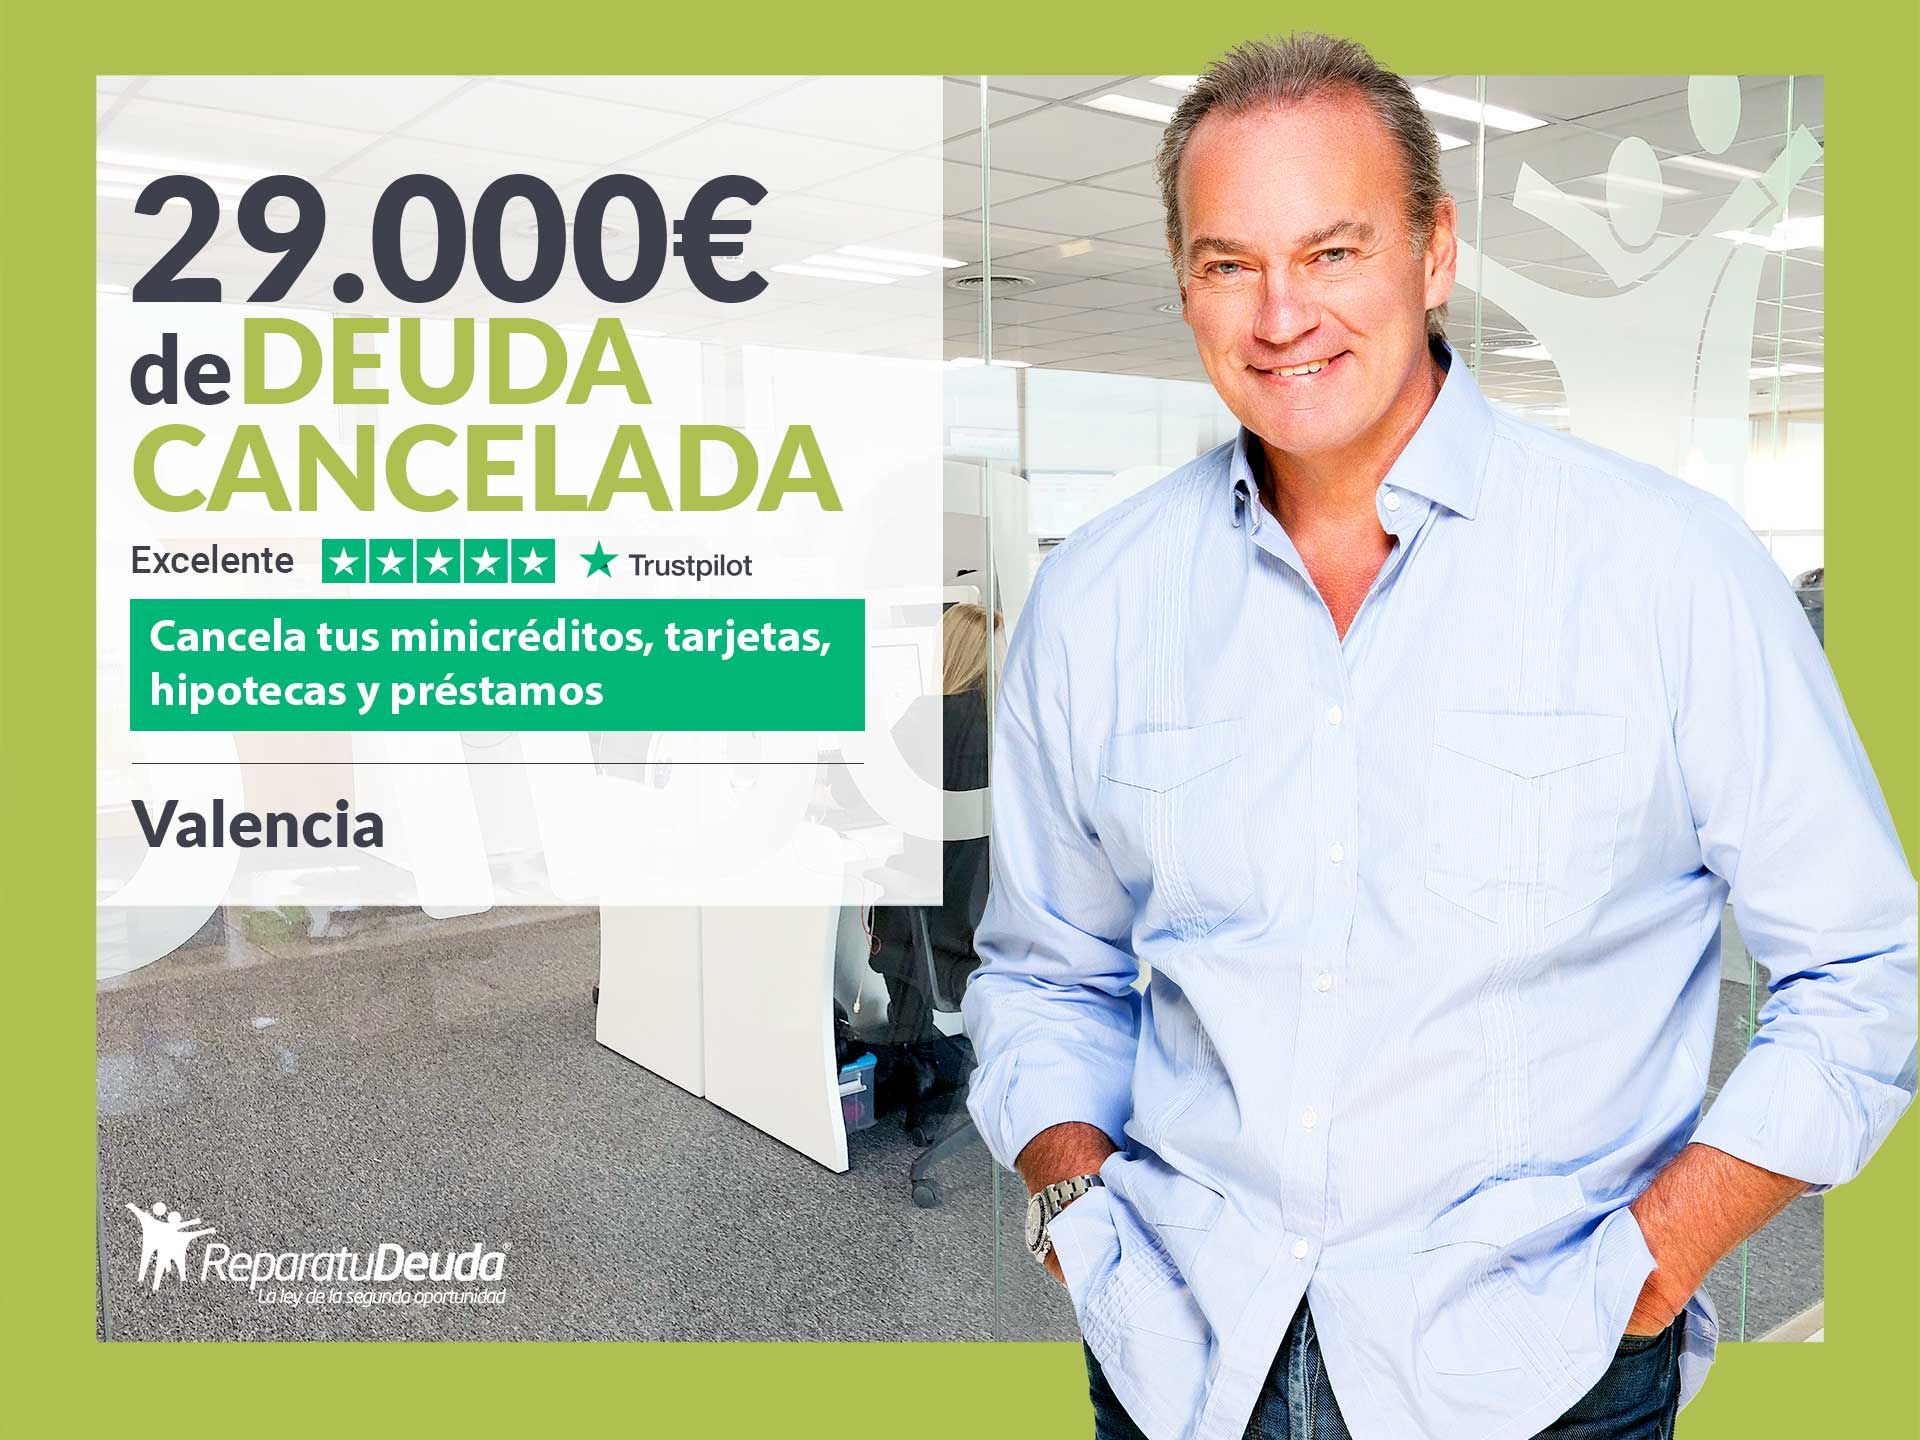 Repara tu Deuda Abogados cancela 29.000? en Valencia con la Ley de Segunda Oportunidad